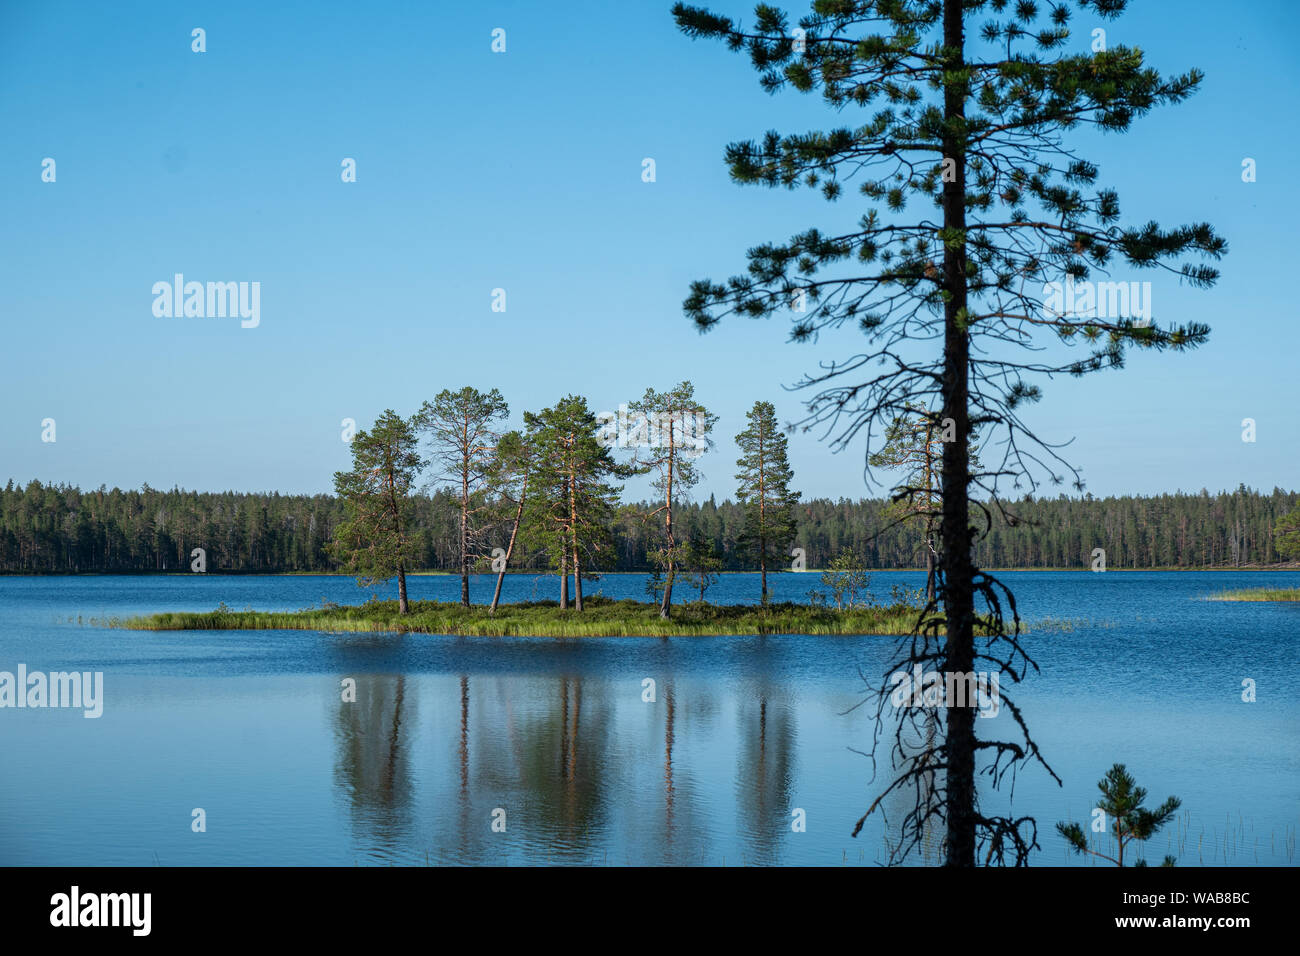 Insel mit Bäumen im See Luonaja an einem schönen Sommertag mit Silhouette der immergrünen Baum im Vordergrund, Nationalpark Hossa Finnland Stockfoto